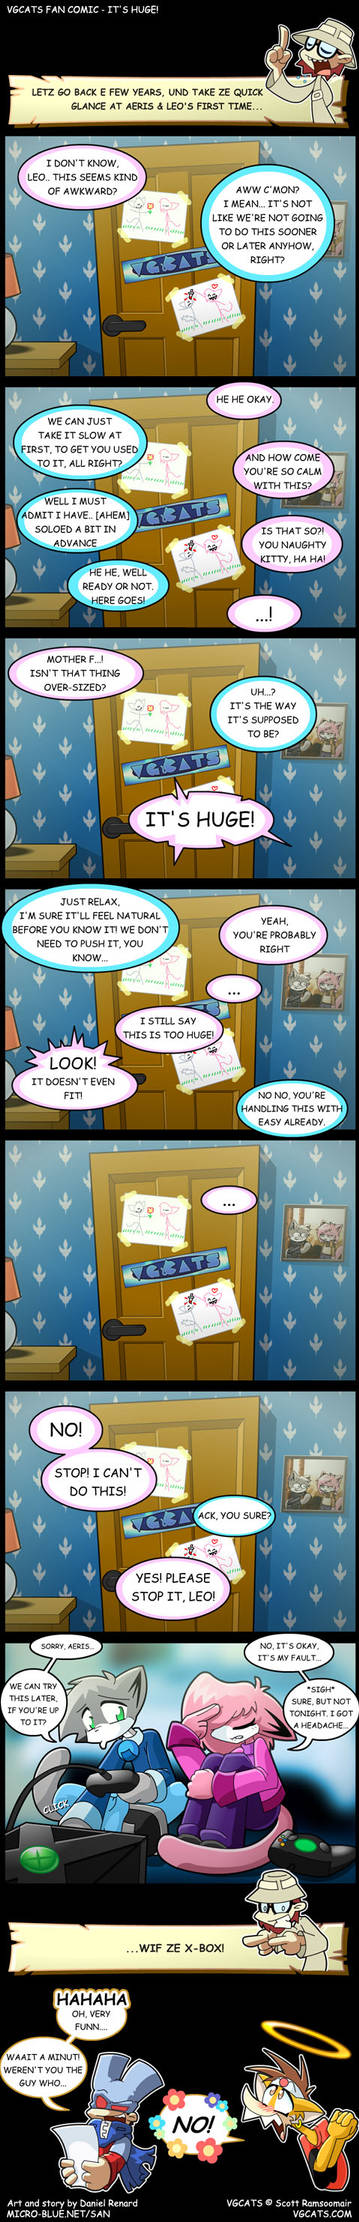 VG Cats - fan comic